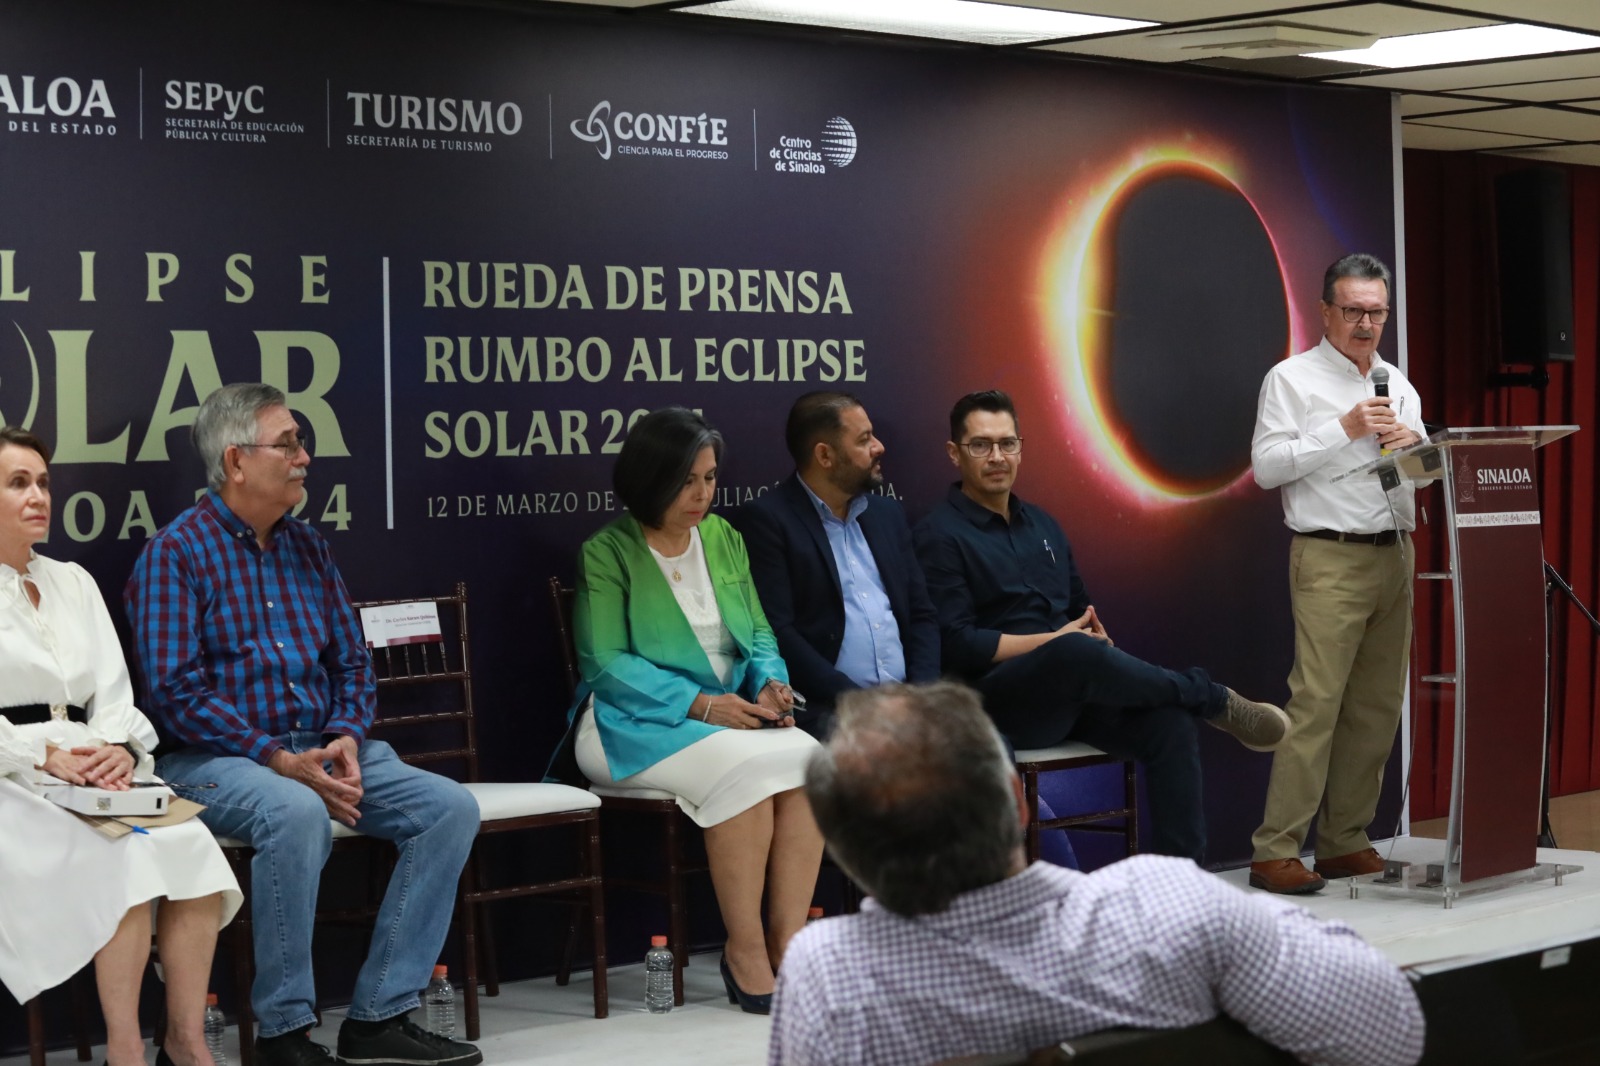 Brindarán SEPyC y CONFÍE cursos para observar el eclipse solar de forma segura